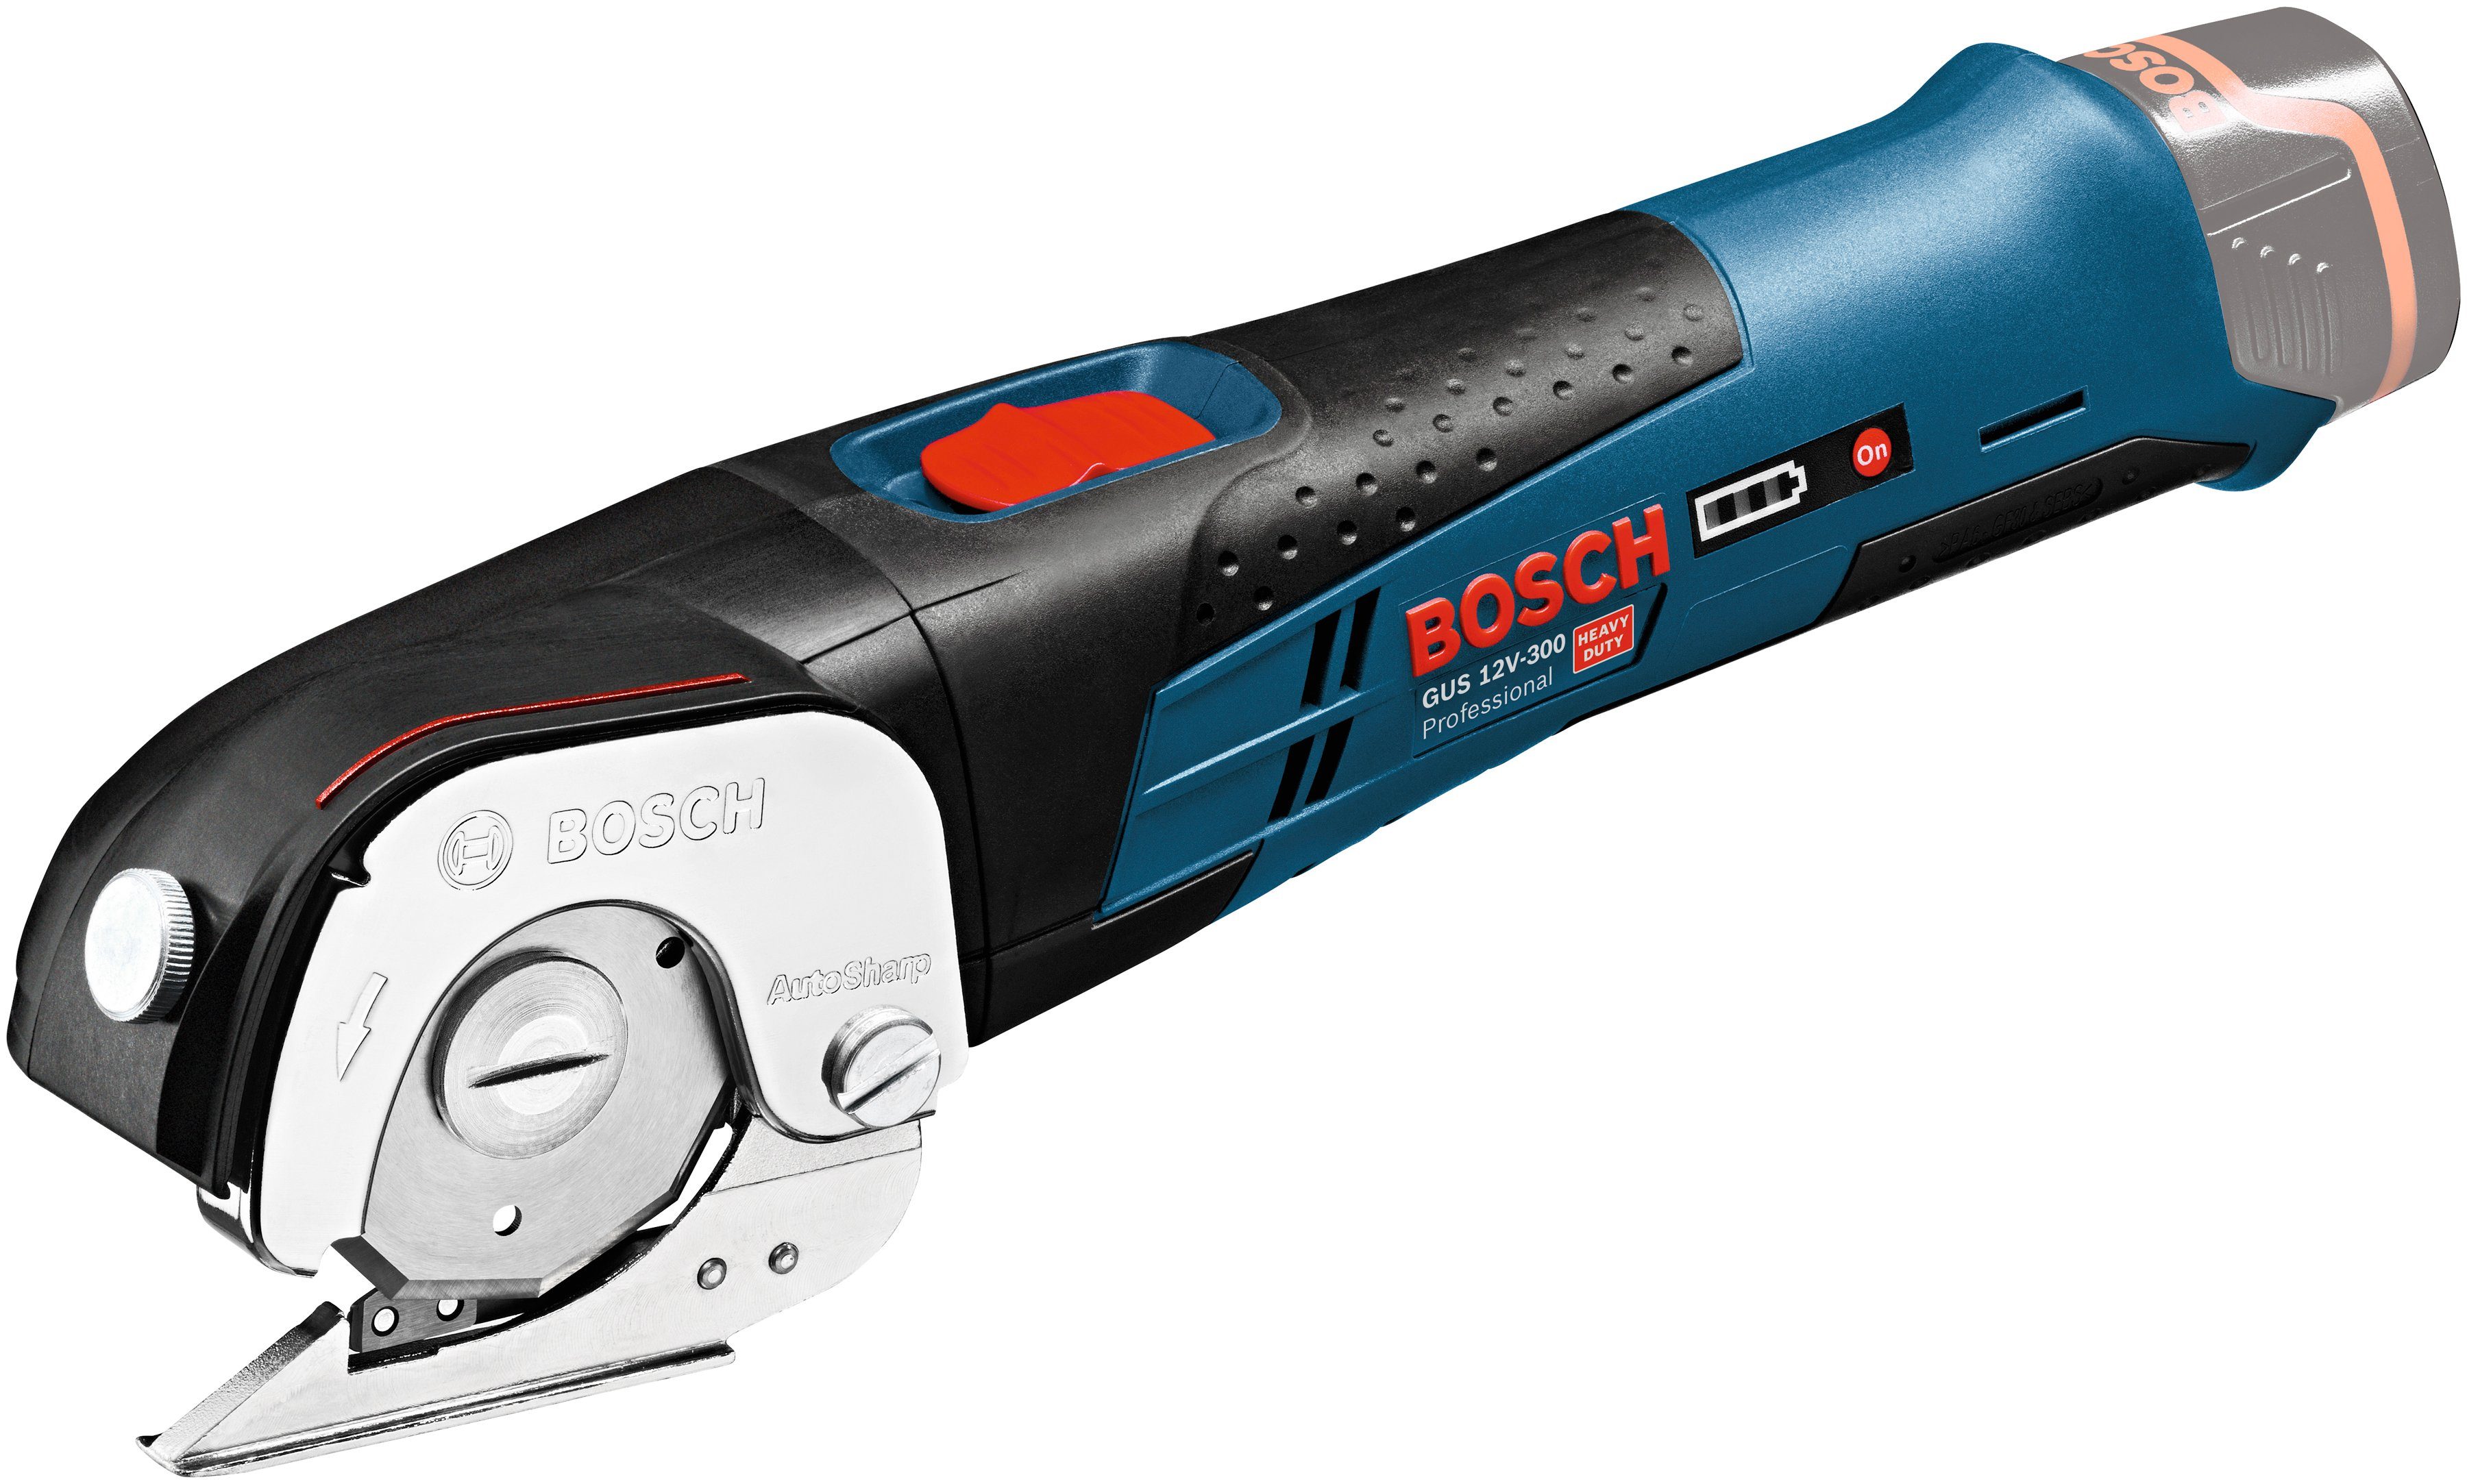 12V-300, Bosch ohne Akku-Universalschere Ladegerät und Professional Akku GUS